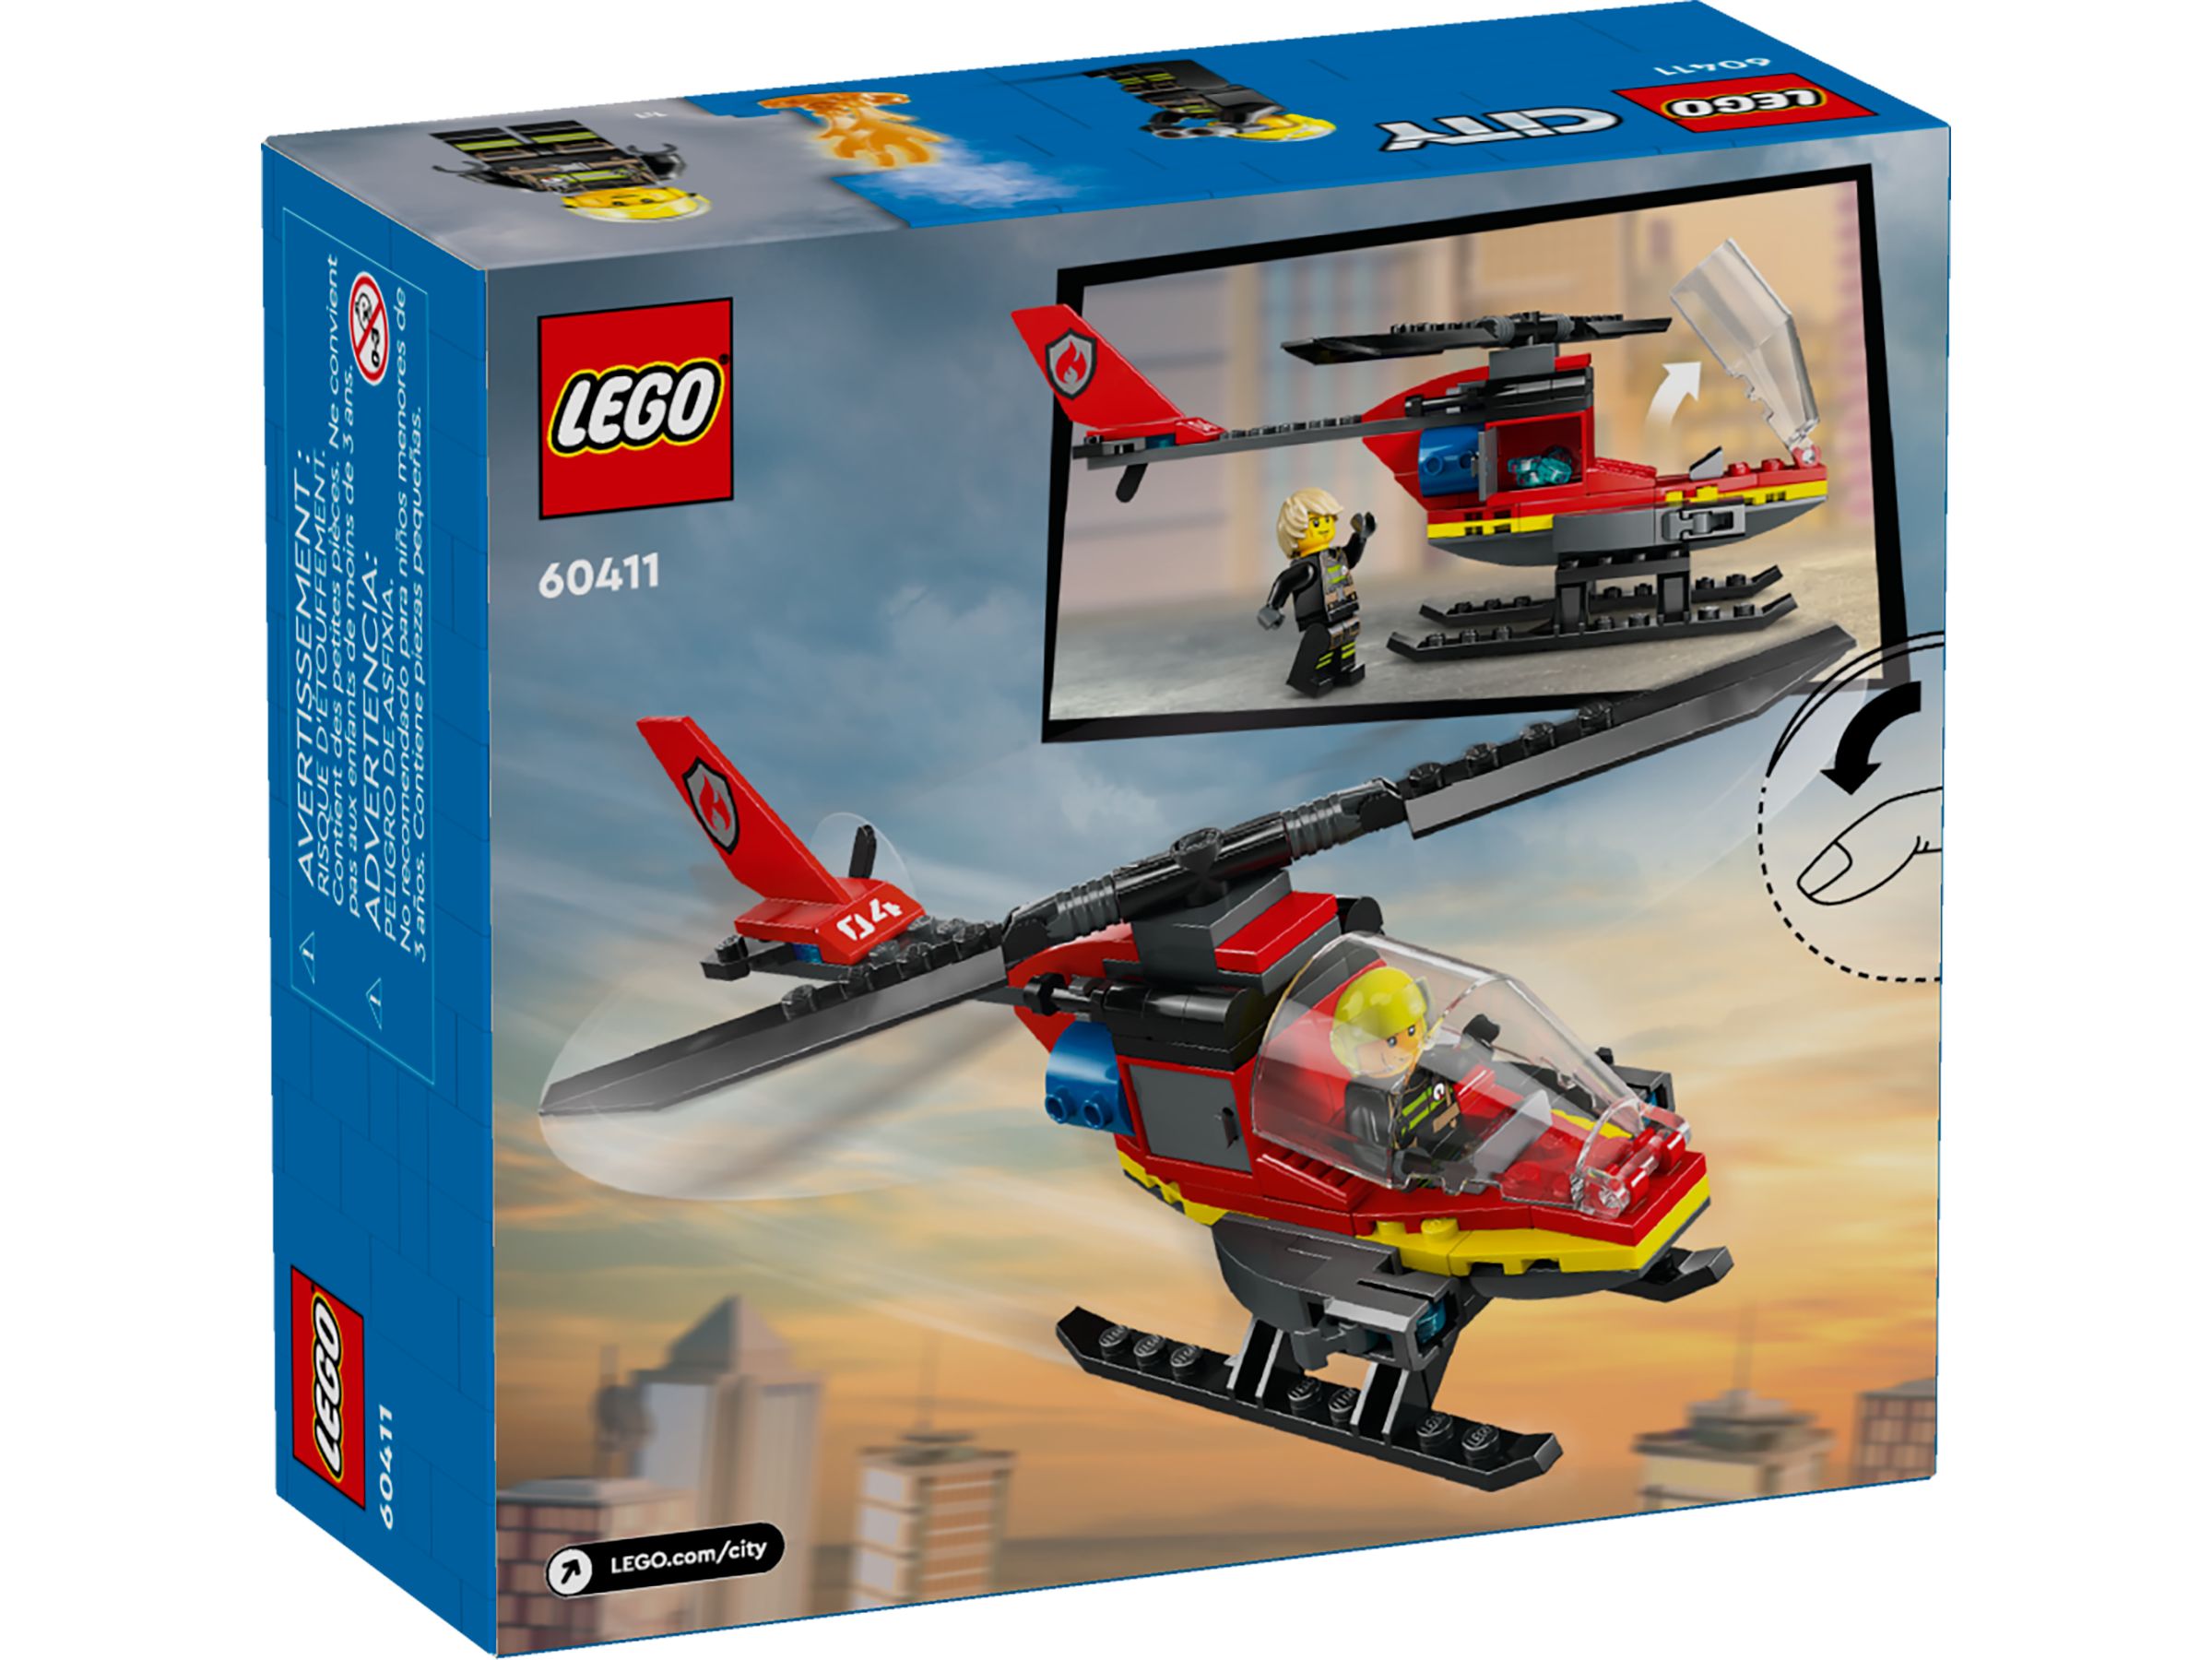 LEGO City 60411 Feuerwehrhubschrauber LEGO_60411_alt5.jpg